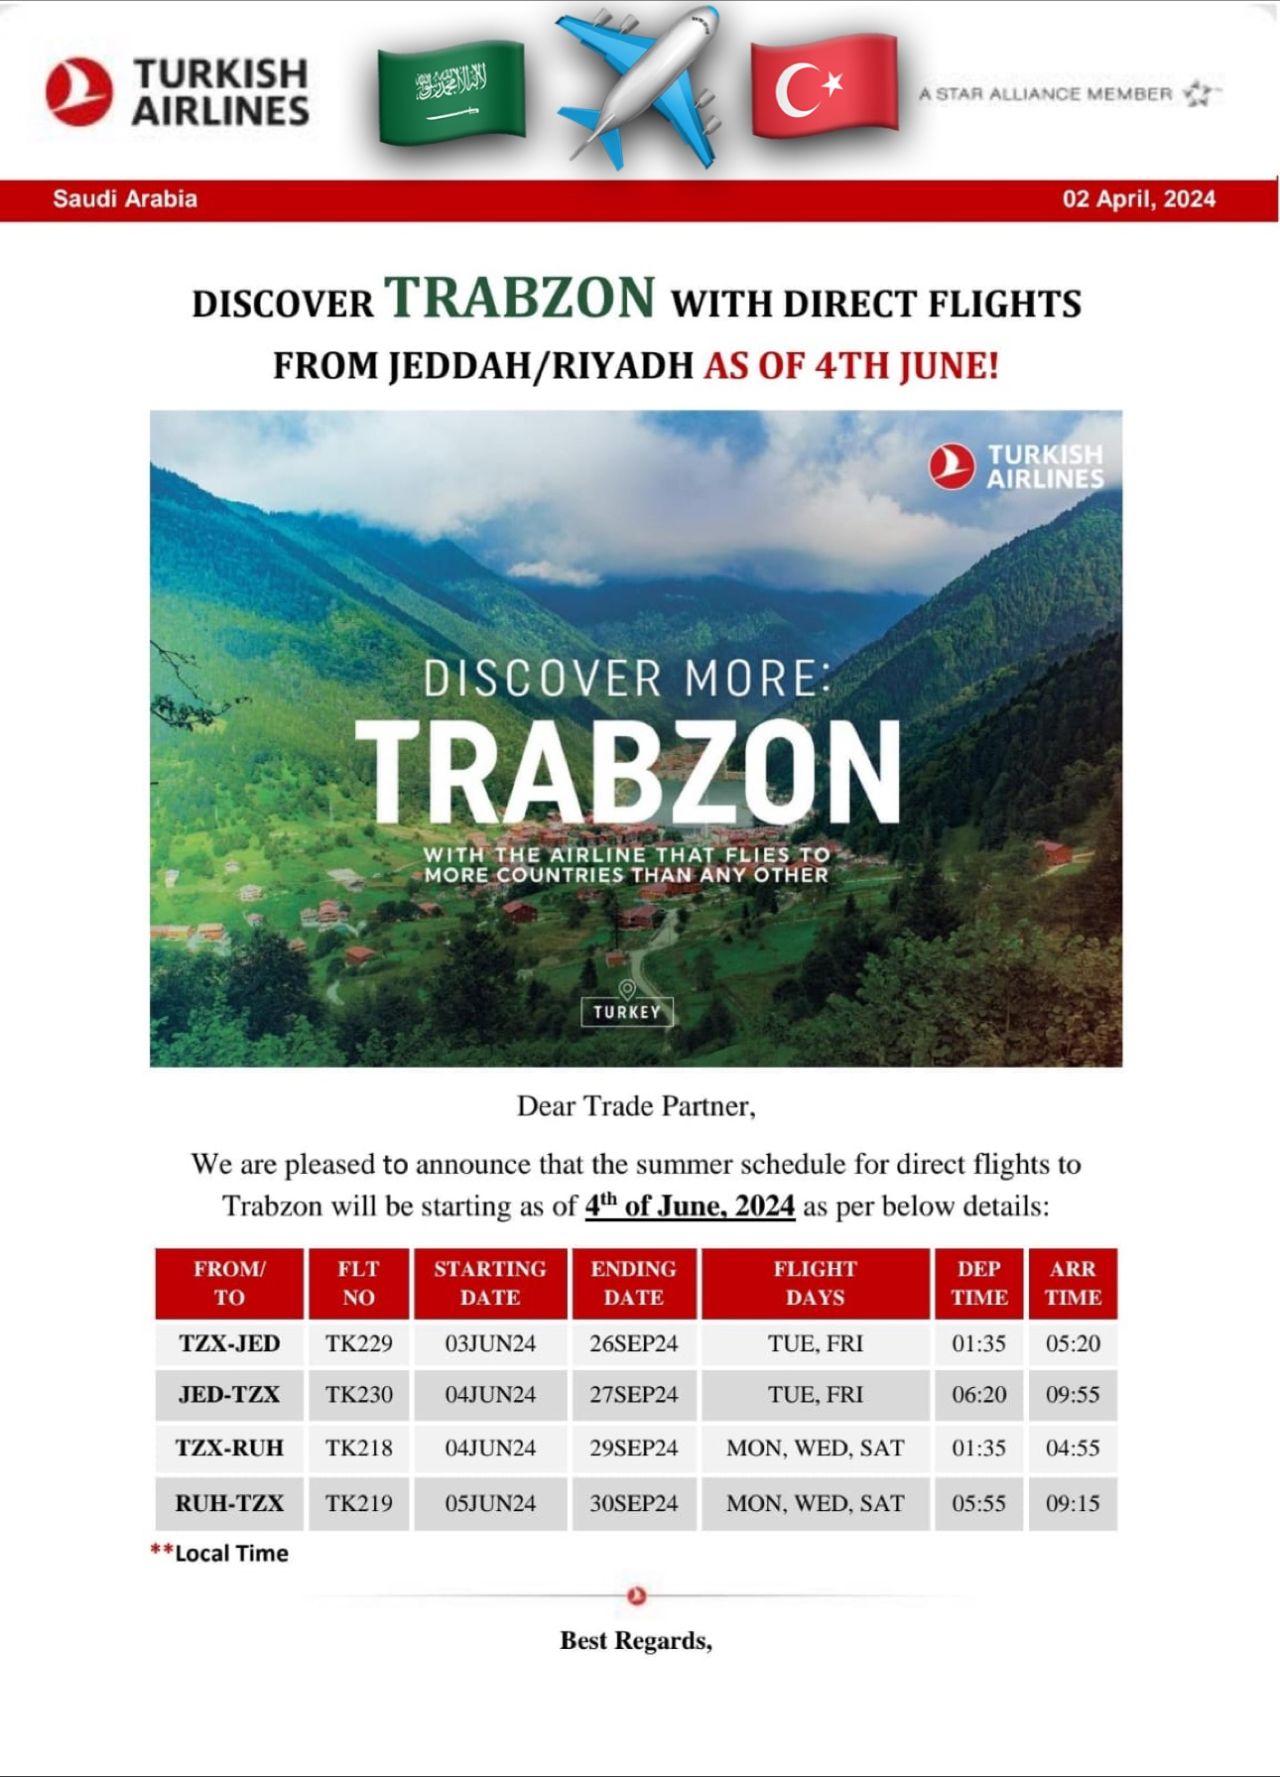 Trabzon ve Suudi Arabistan arasında direkt uçuşlar başlayacak 3 Mayıs 2024